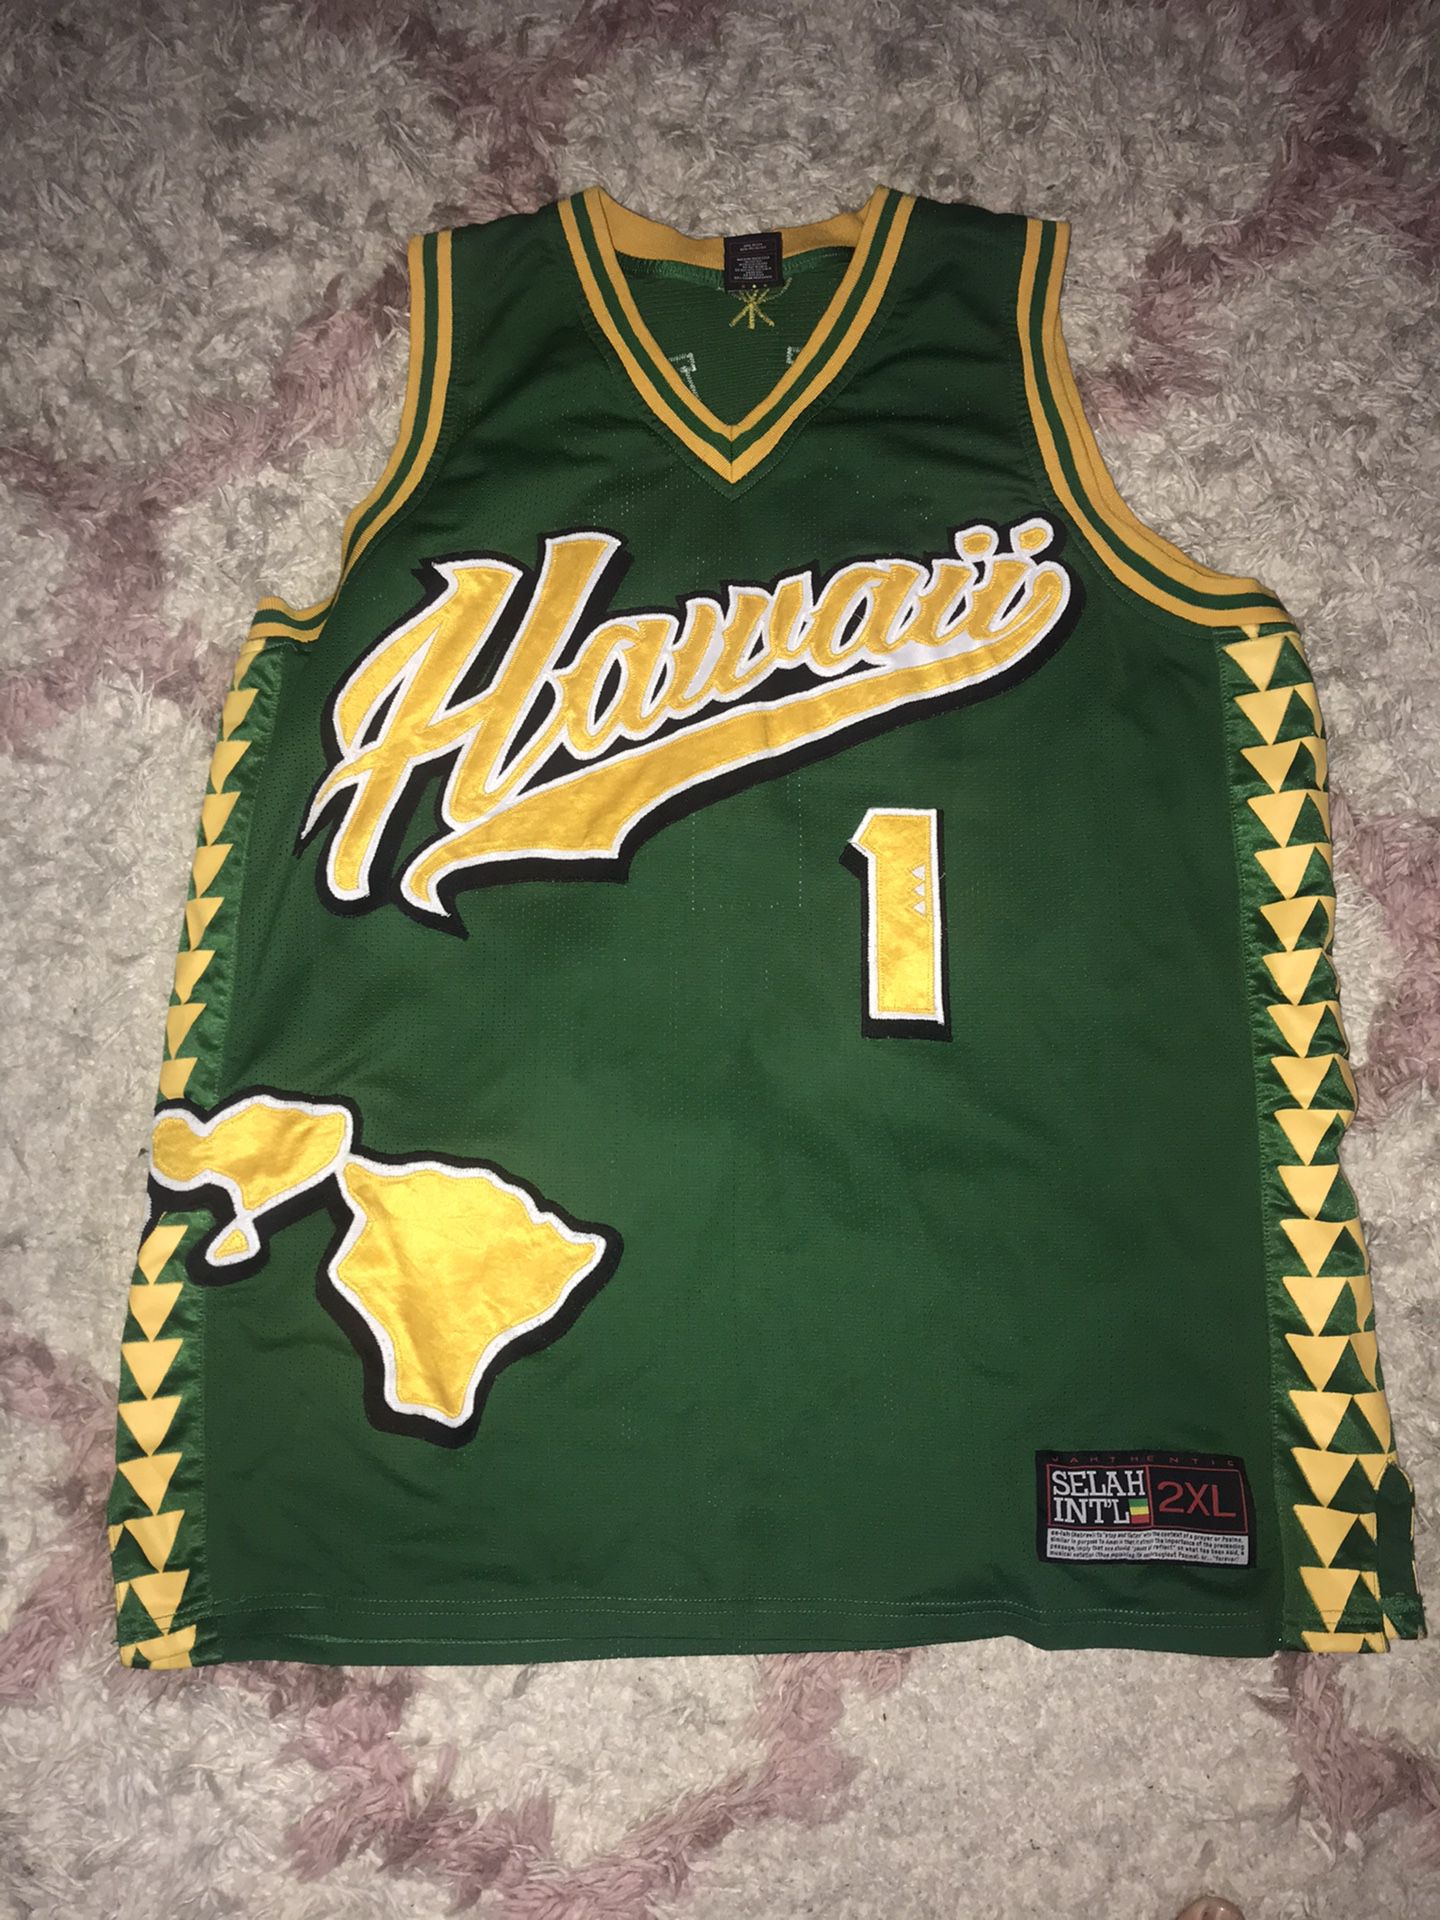 Hawaii men’s jersey